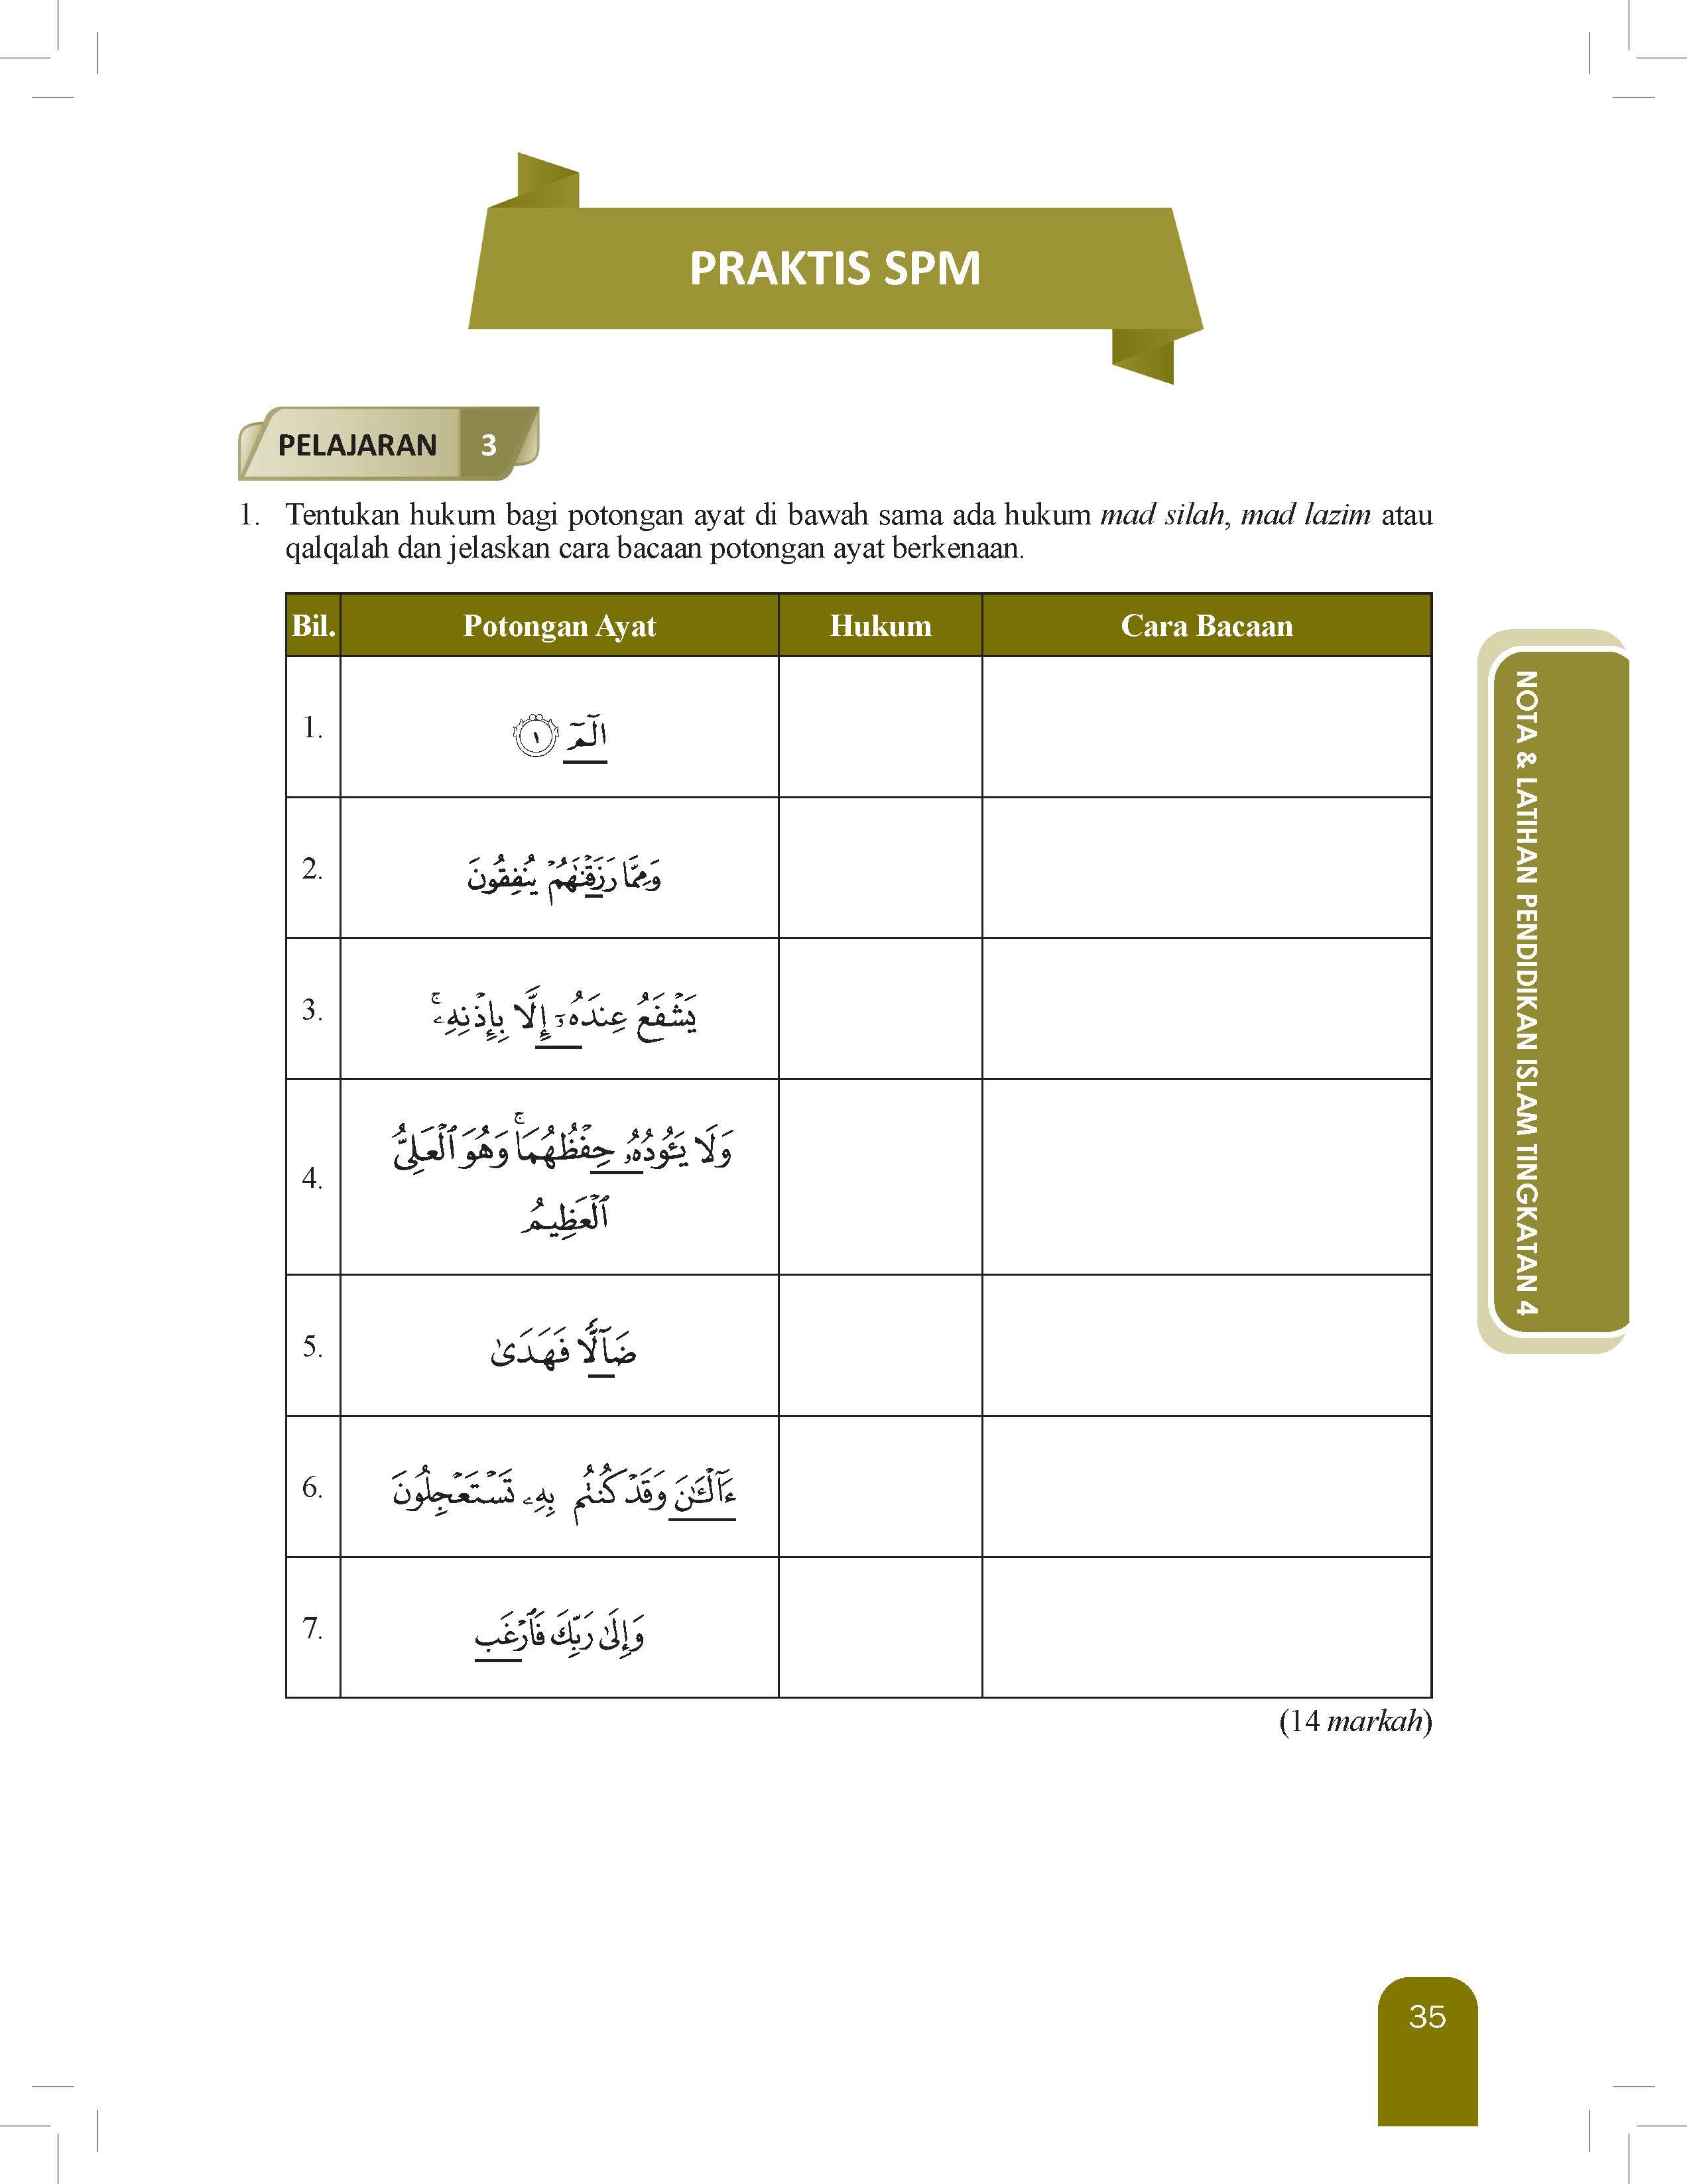 Great Impact Nota Dan Latihan Pendidikan Islam Tingkatan 4 - (TBBS1286)